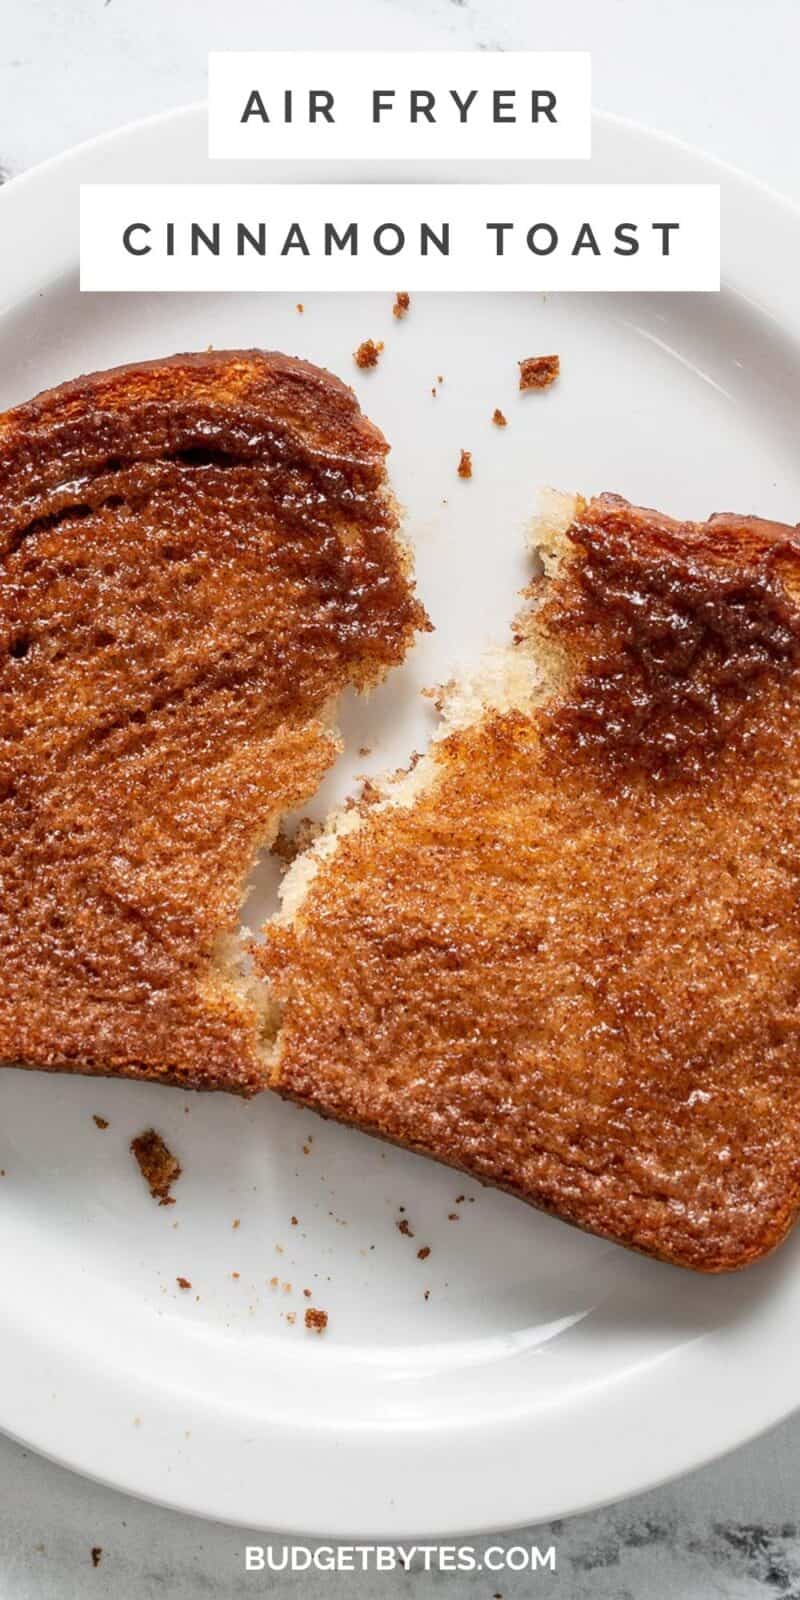 Colpo dall'alto di toast alla cannella strappato e fritto all'aria sul piatto bianco.